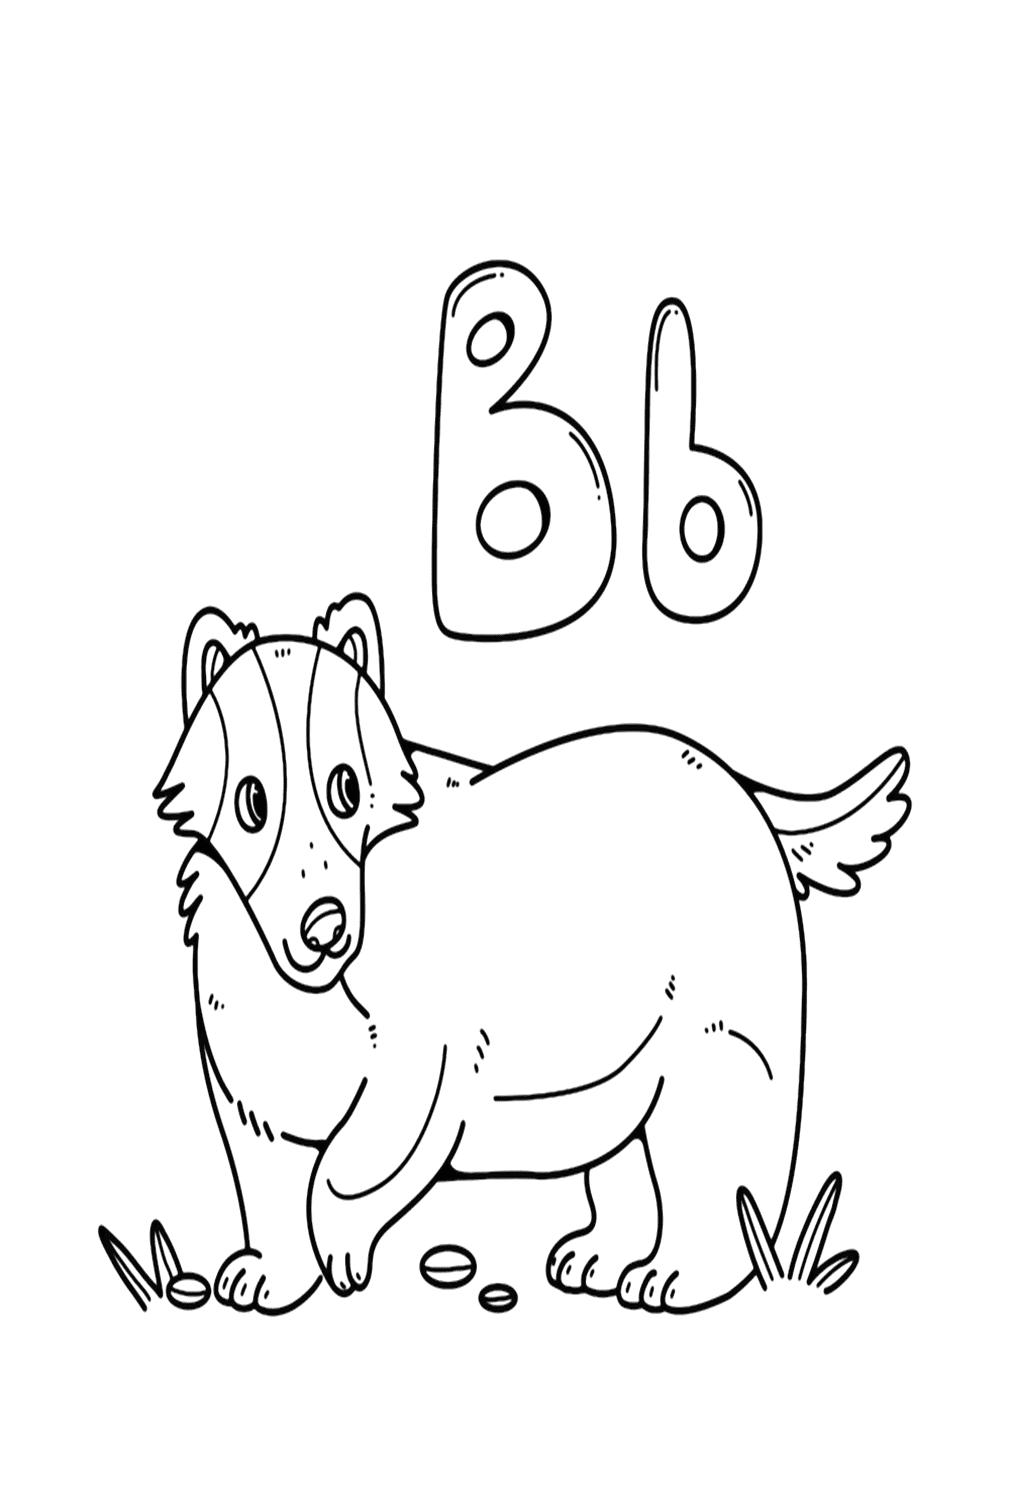 Буква B для раскраски барсука от Badger